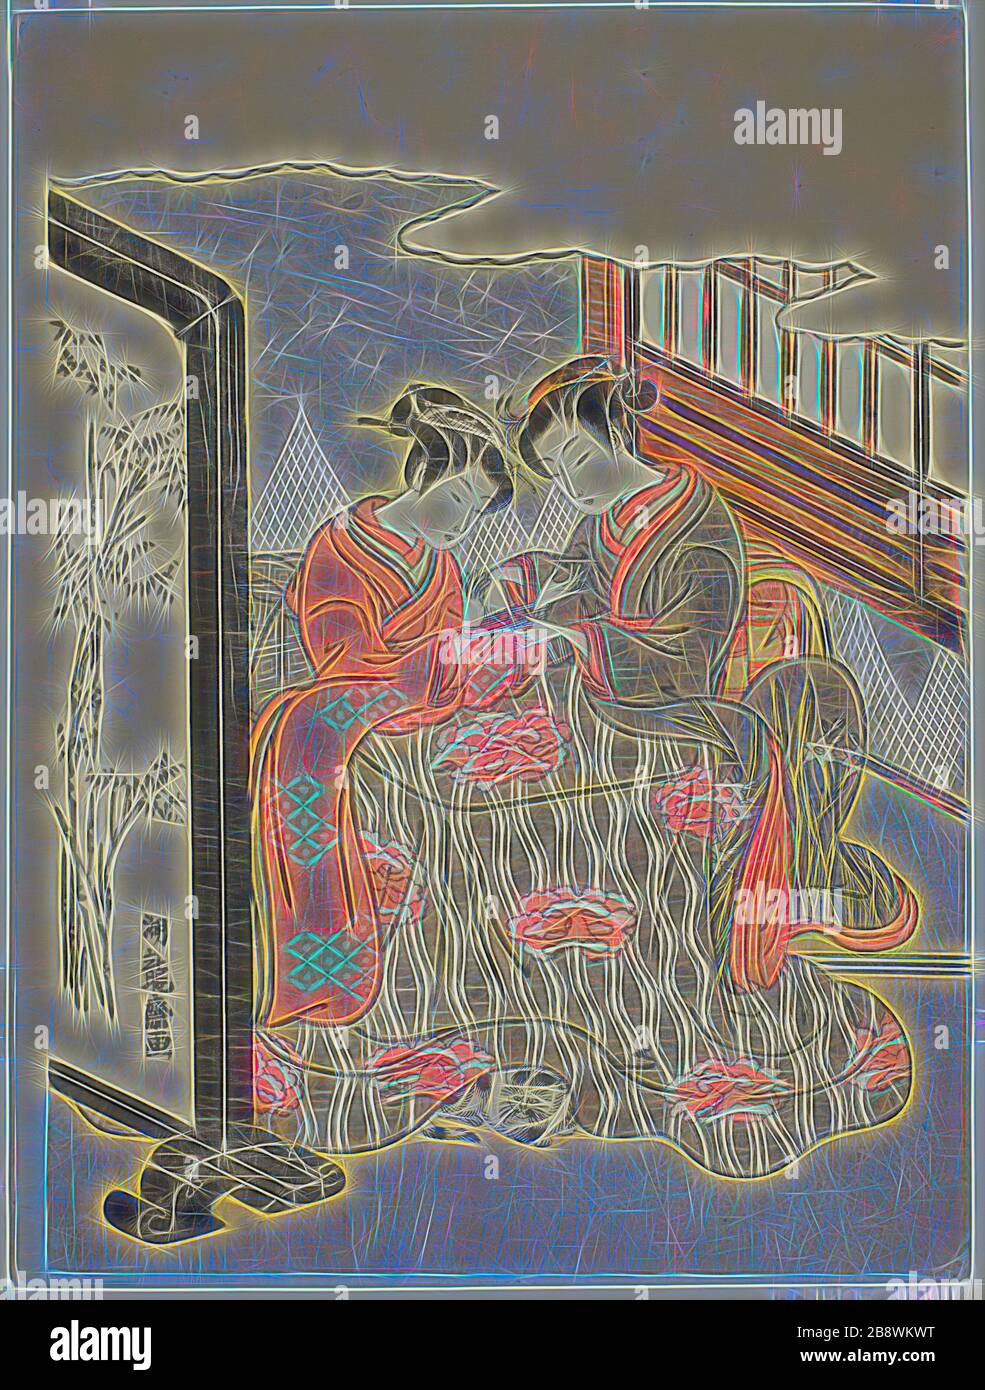 Deux jeunes femmes jouant au Cradle de Cat, c. 1769, Isoda Koryusai, japonais, 1735-1790, Japon, imprimé color woodblock, chuban, 10 1/4 x 7 3/4 in., repensé par Gibon, design de glanissement chaleureux et gai de lumière et de rayonnement. L'art classique réinventé avec une touche moderne. La photographie inspirée du futurisme, qui embrasse l'énergie dynamique de la technologie moderne, du mouvement, de la vitesse et révolutionne la culture. Banque D'Images